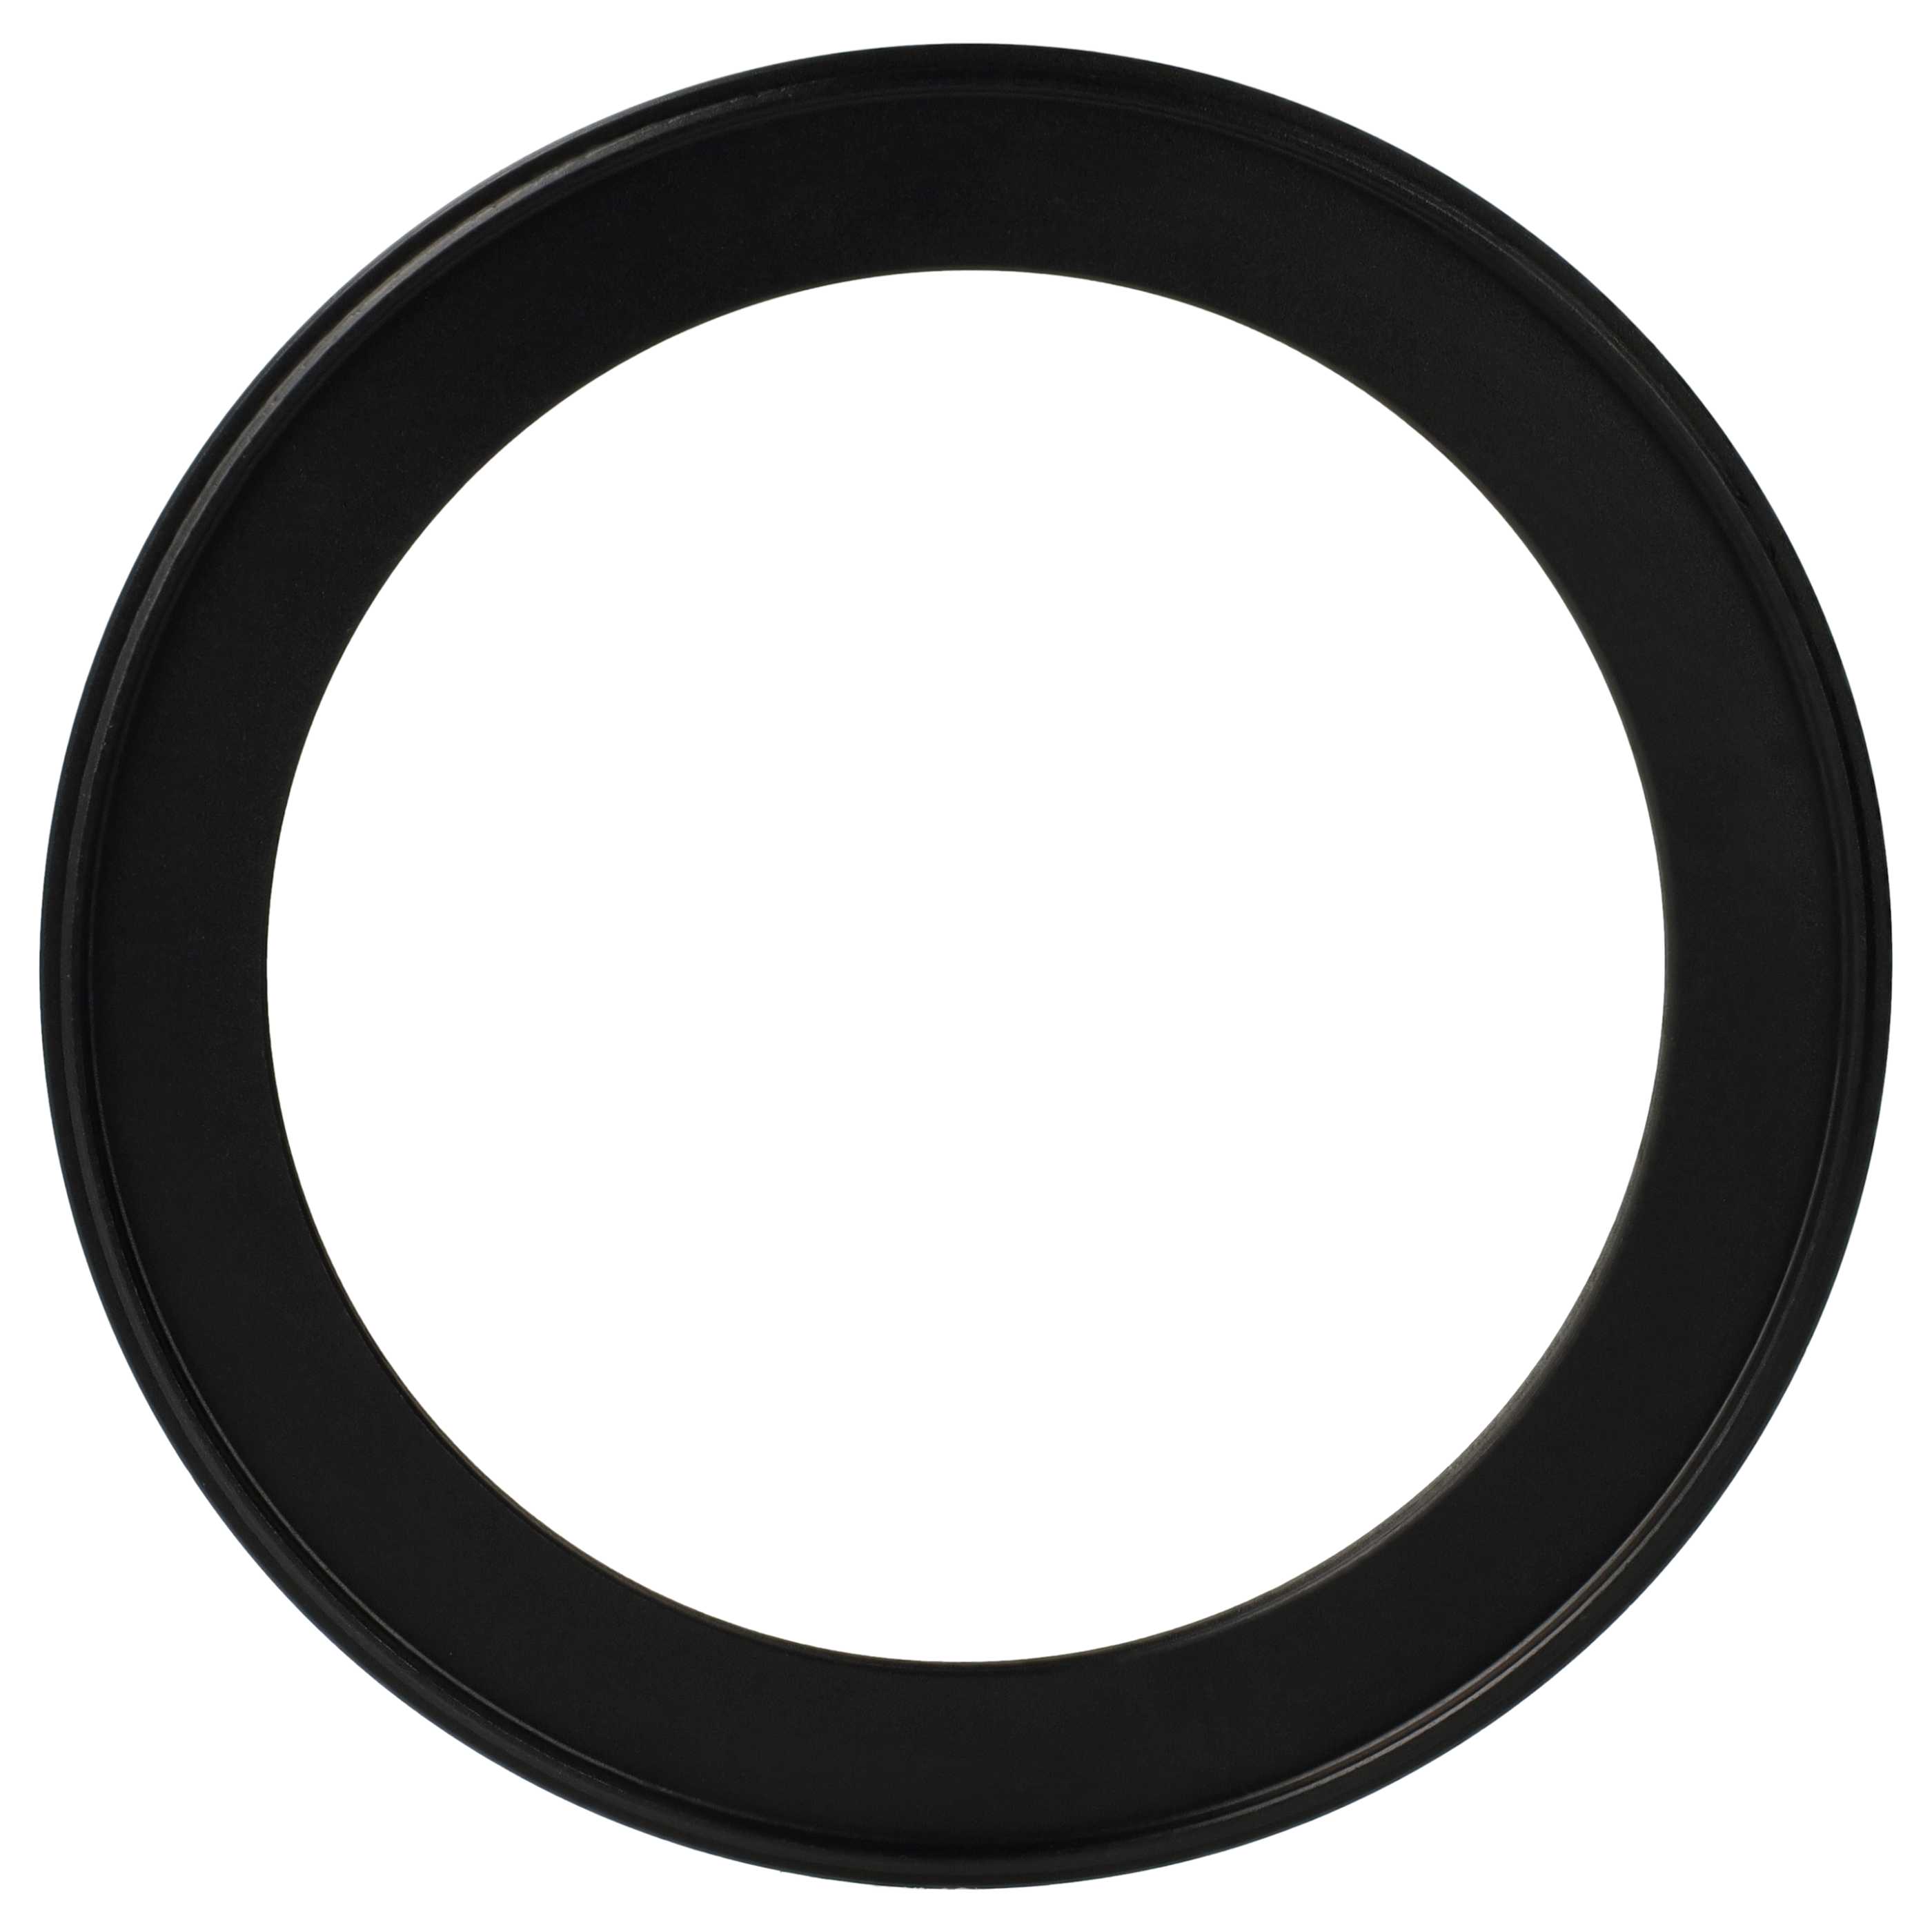 Anello adattatore step-down da 105 mm a 82 mm per obiettivo fotocamera - Adattatore filtro, metallo, nero